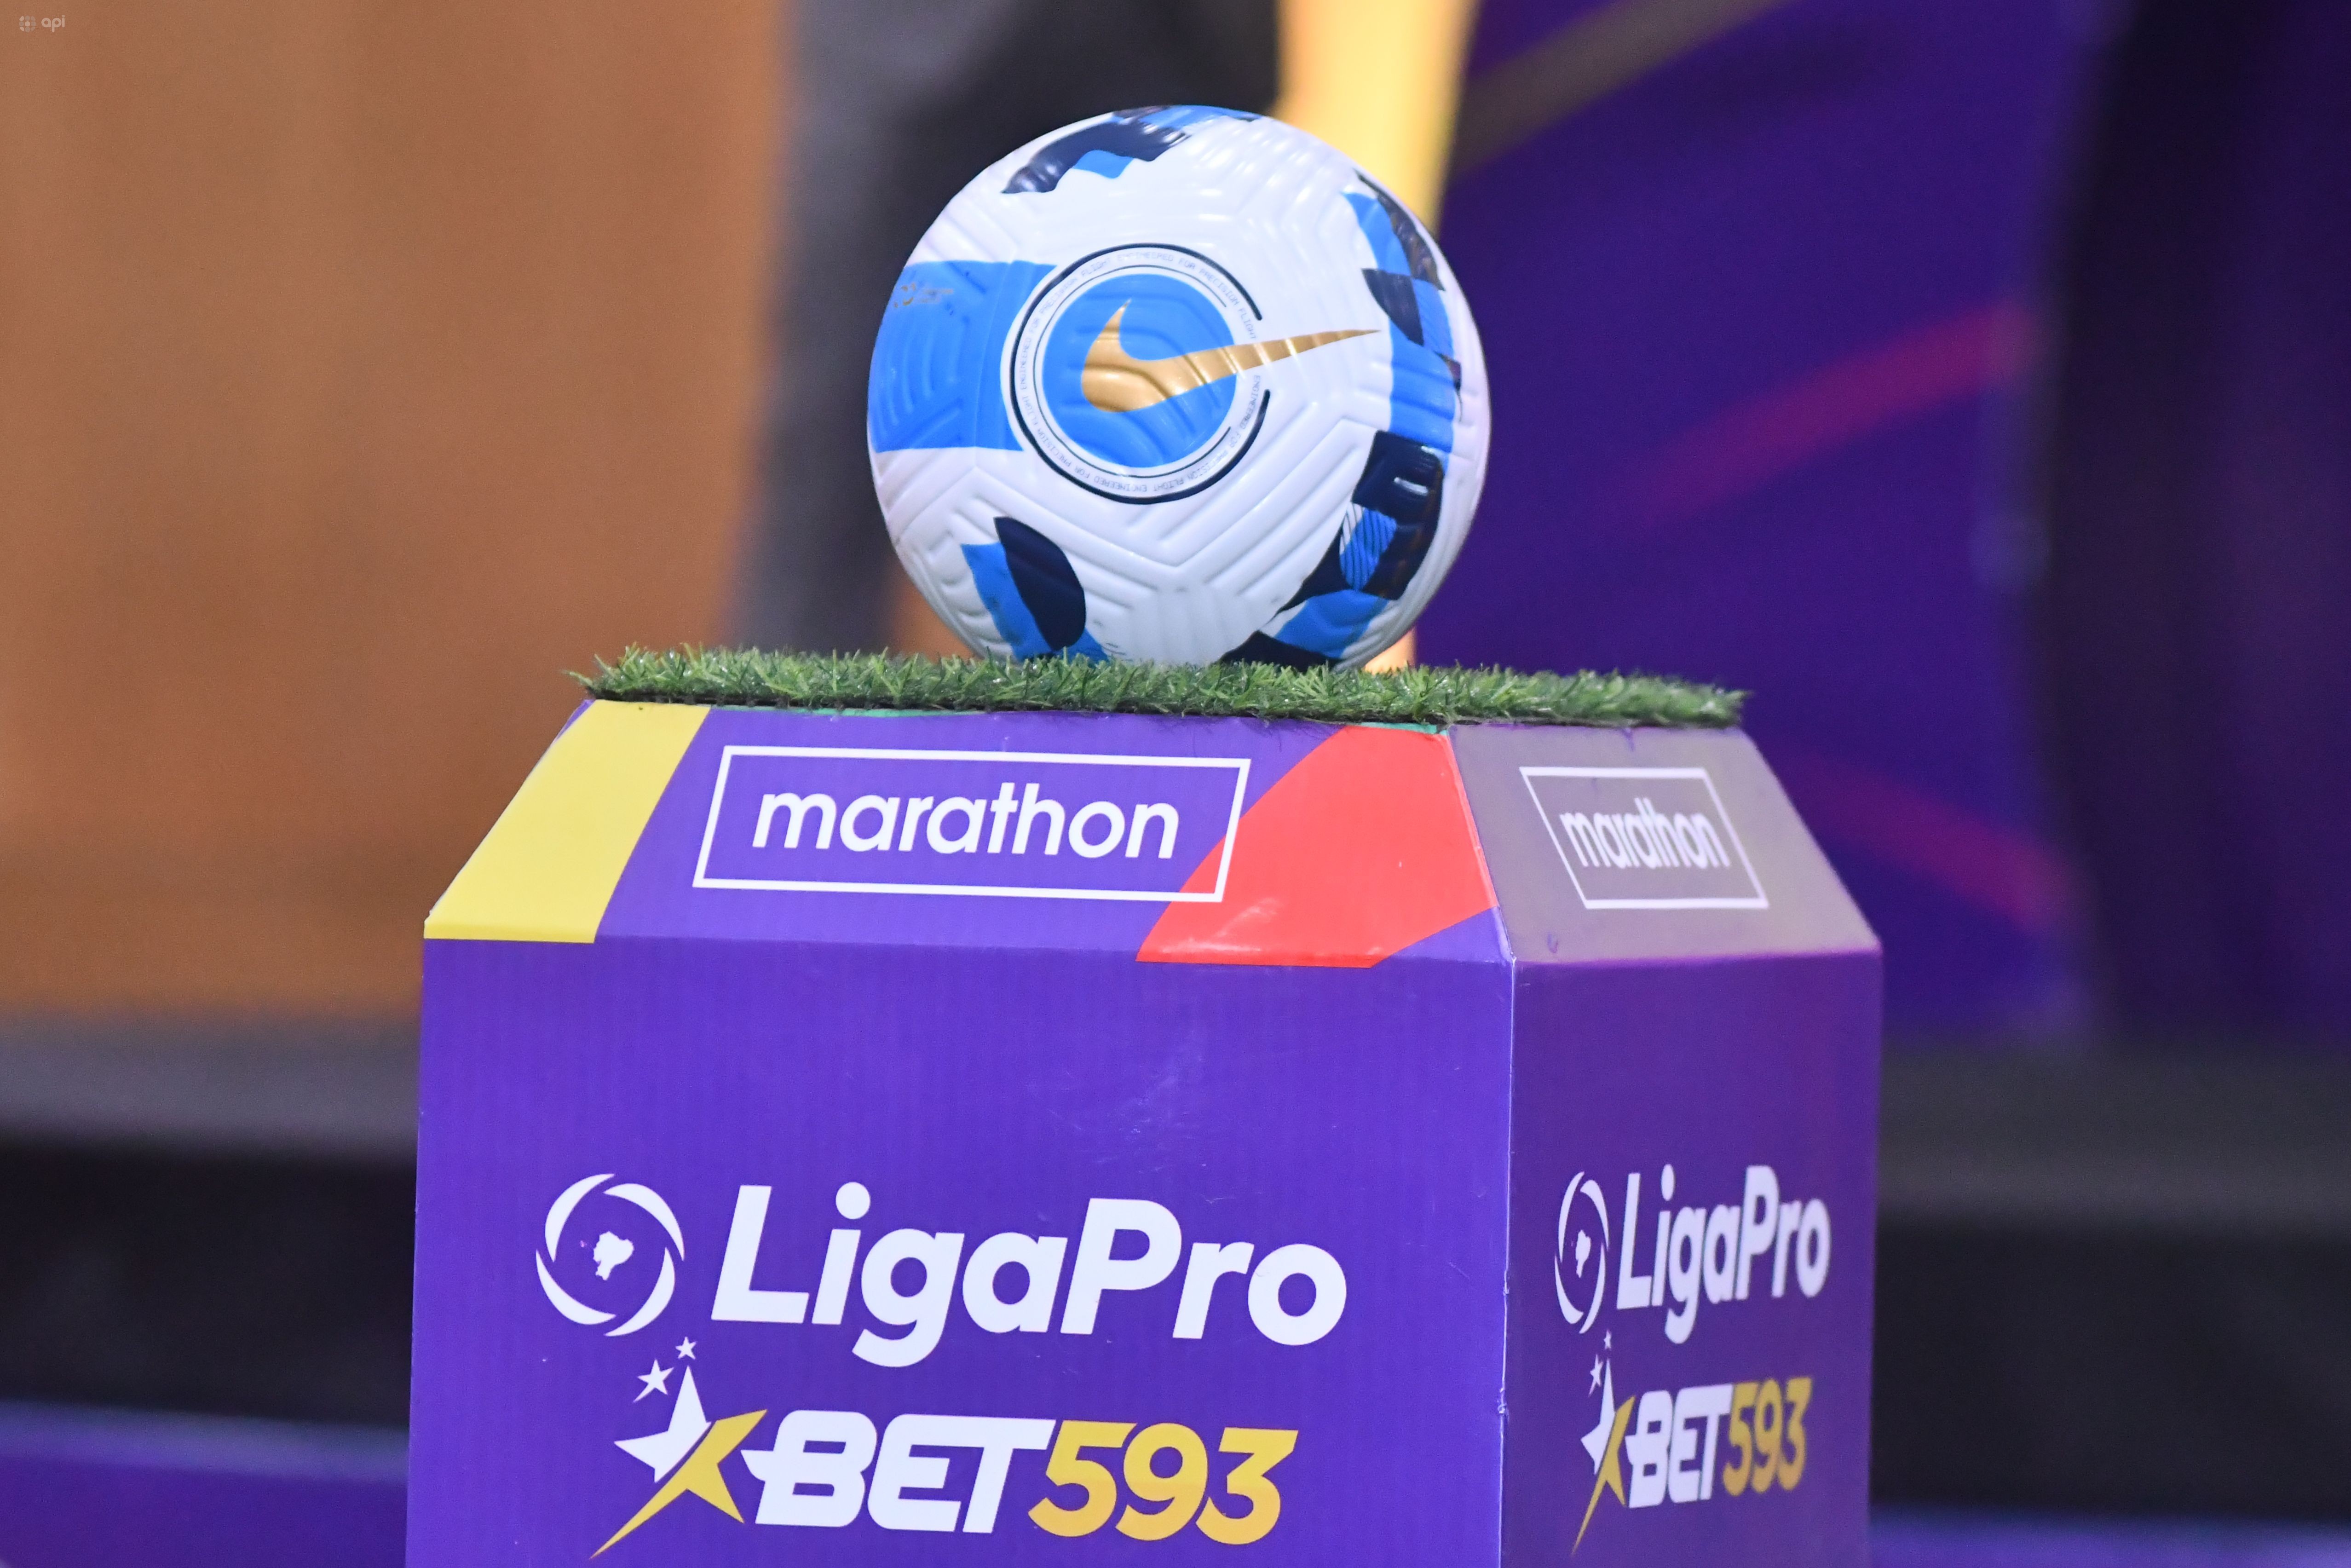 Liga Pro: Fechas y horarios de los partidos de la primera jornada del campeonato nacional de fútbol de Ecuador 2023 | Campeonato Nacional | Deportes | El Universo